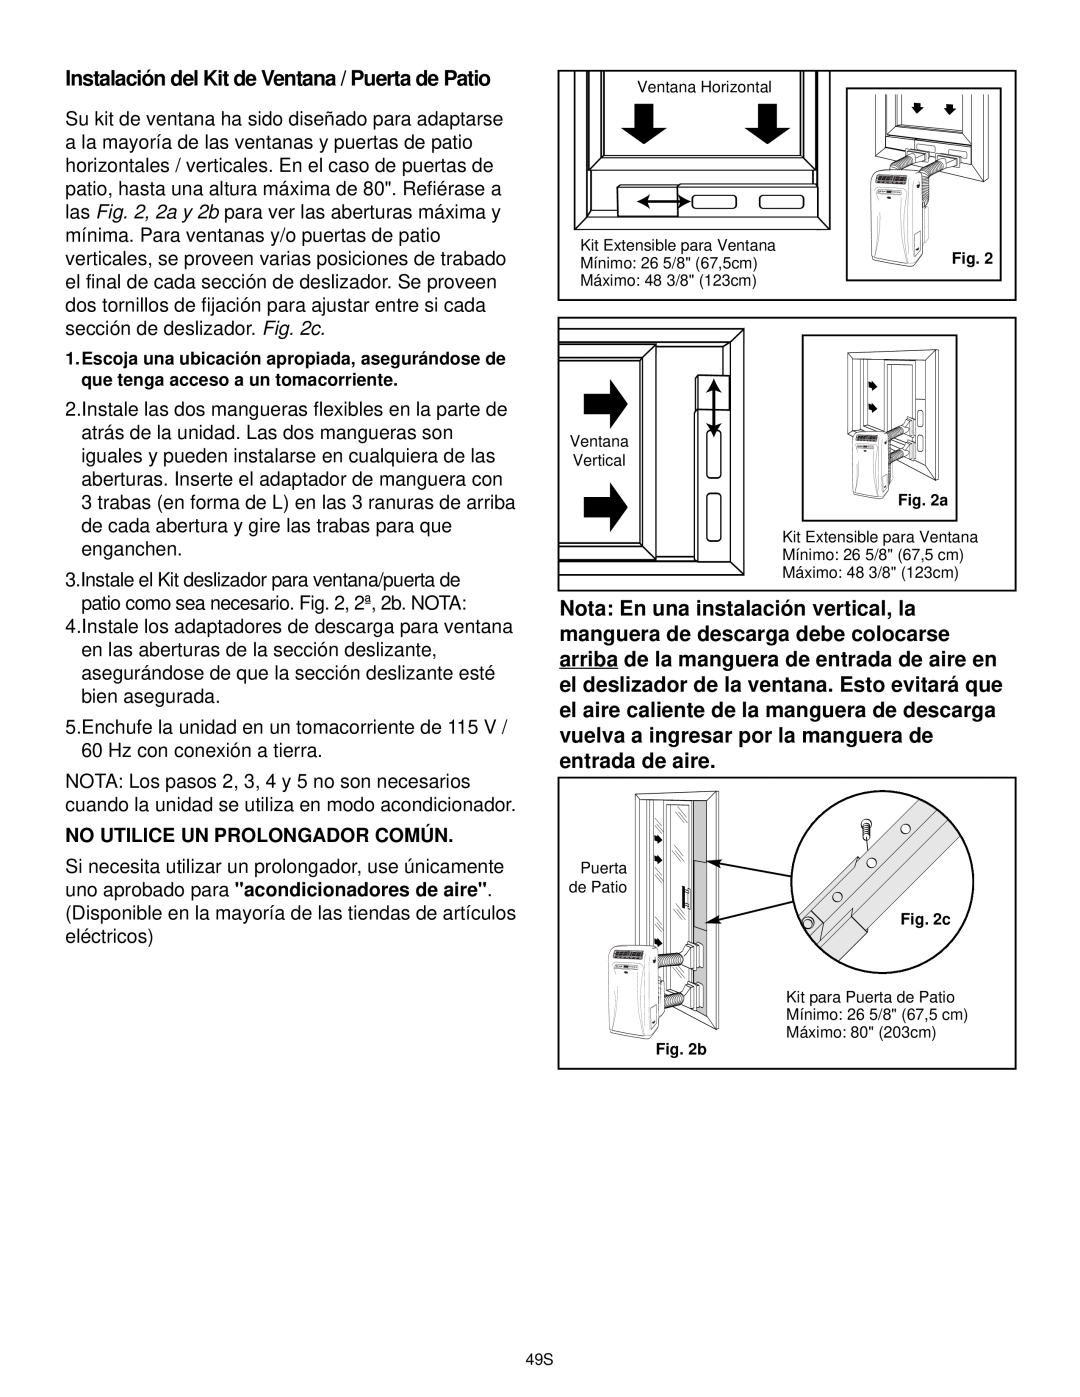 Danby DPAC9030, DCAP 12030 manual Instalación del Kit de Ventana / Puerta de Patio, No Utilice Un Prolongador Común 